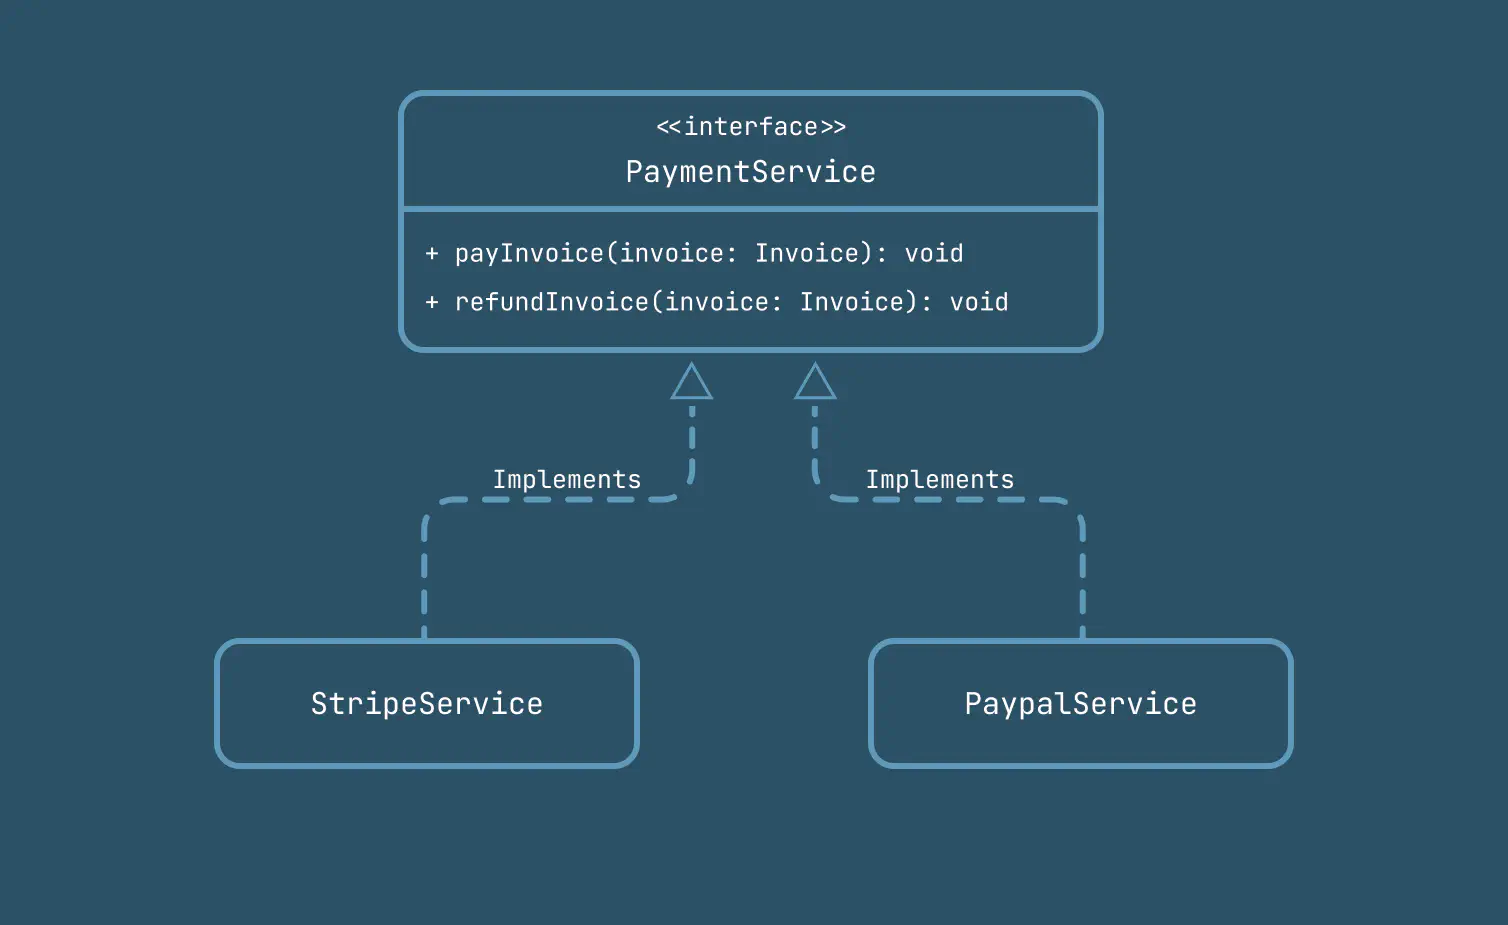 صورة توضيحية لكلاسات مختلفة تطبق interface خاصة بخدمات الدفع